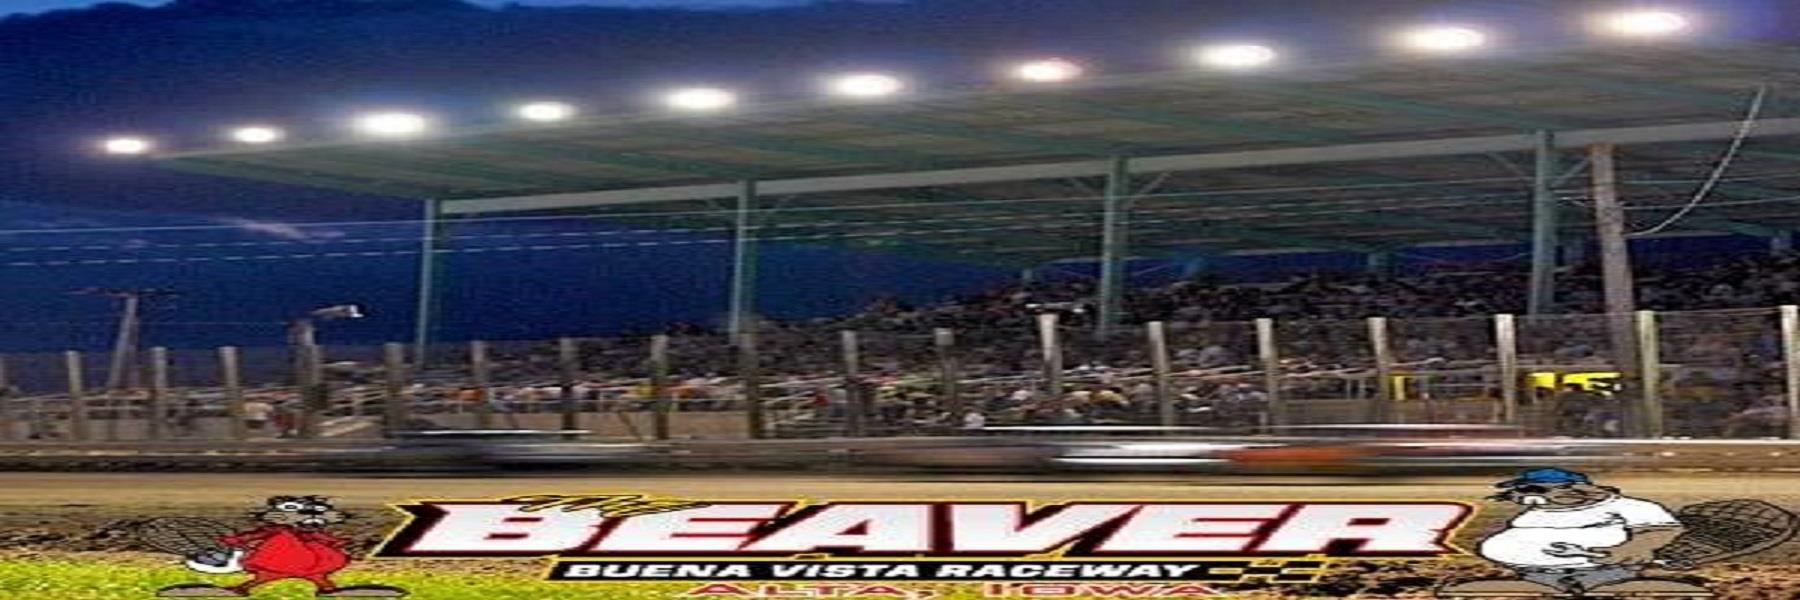 6/15/2022 - Buena Vista Raceway